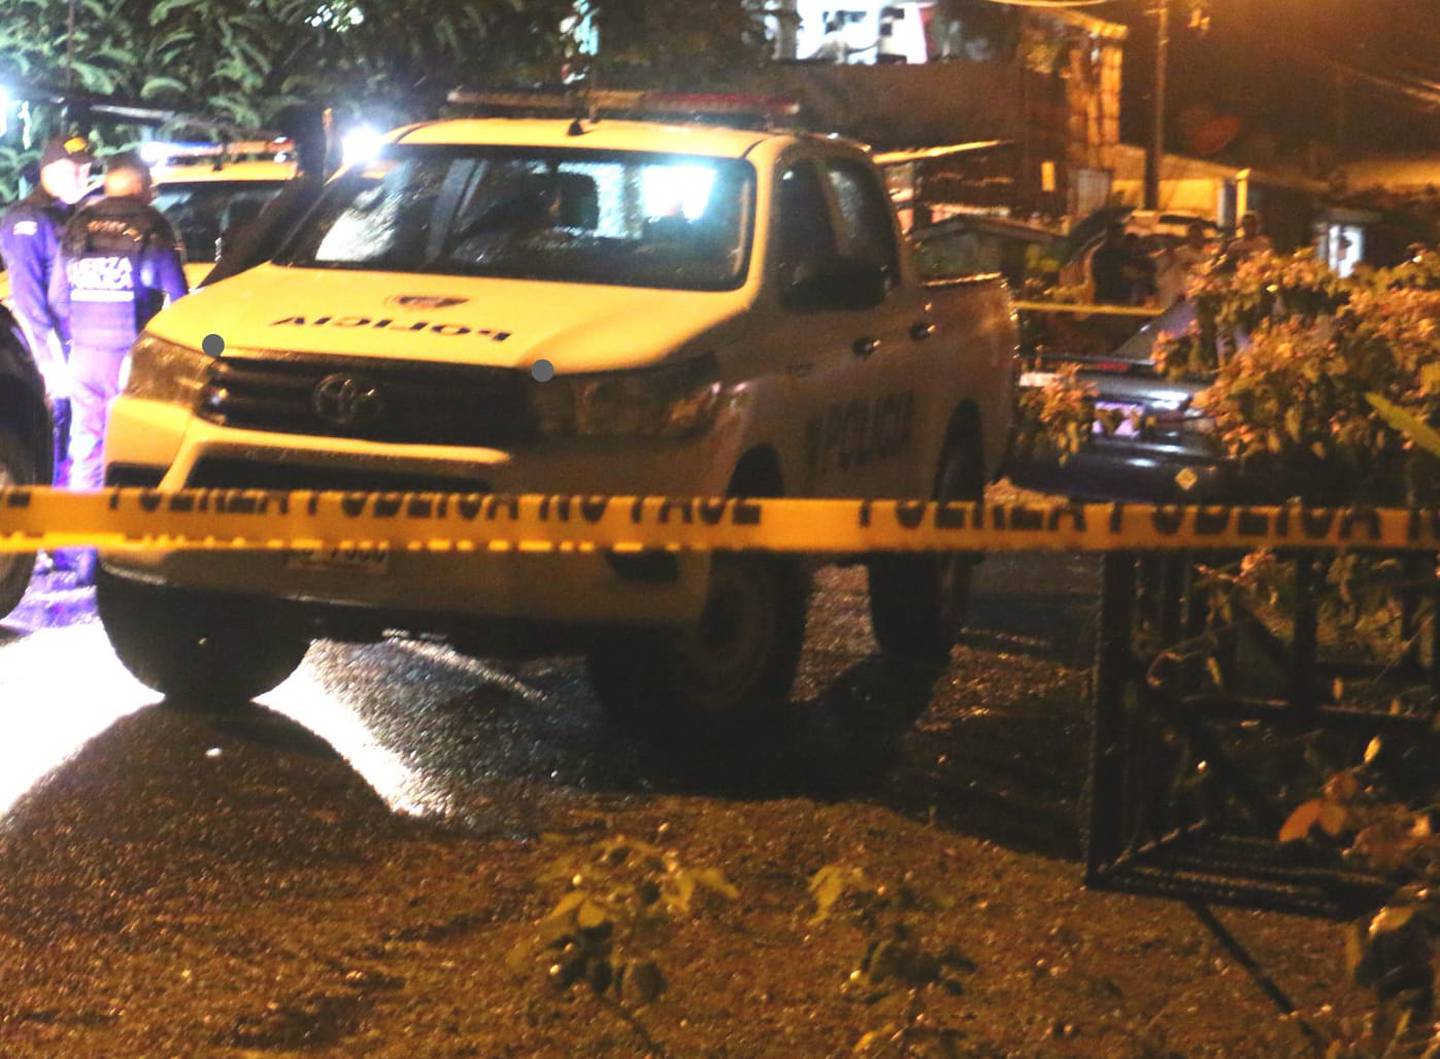 La Fuerza Pública acordonó la escena hasta que los agentes del OIJ llegaron a recolectar indicios y levantar el cuerpo del foráneo asesinado. Foto: Reiner Montero.